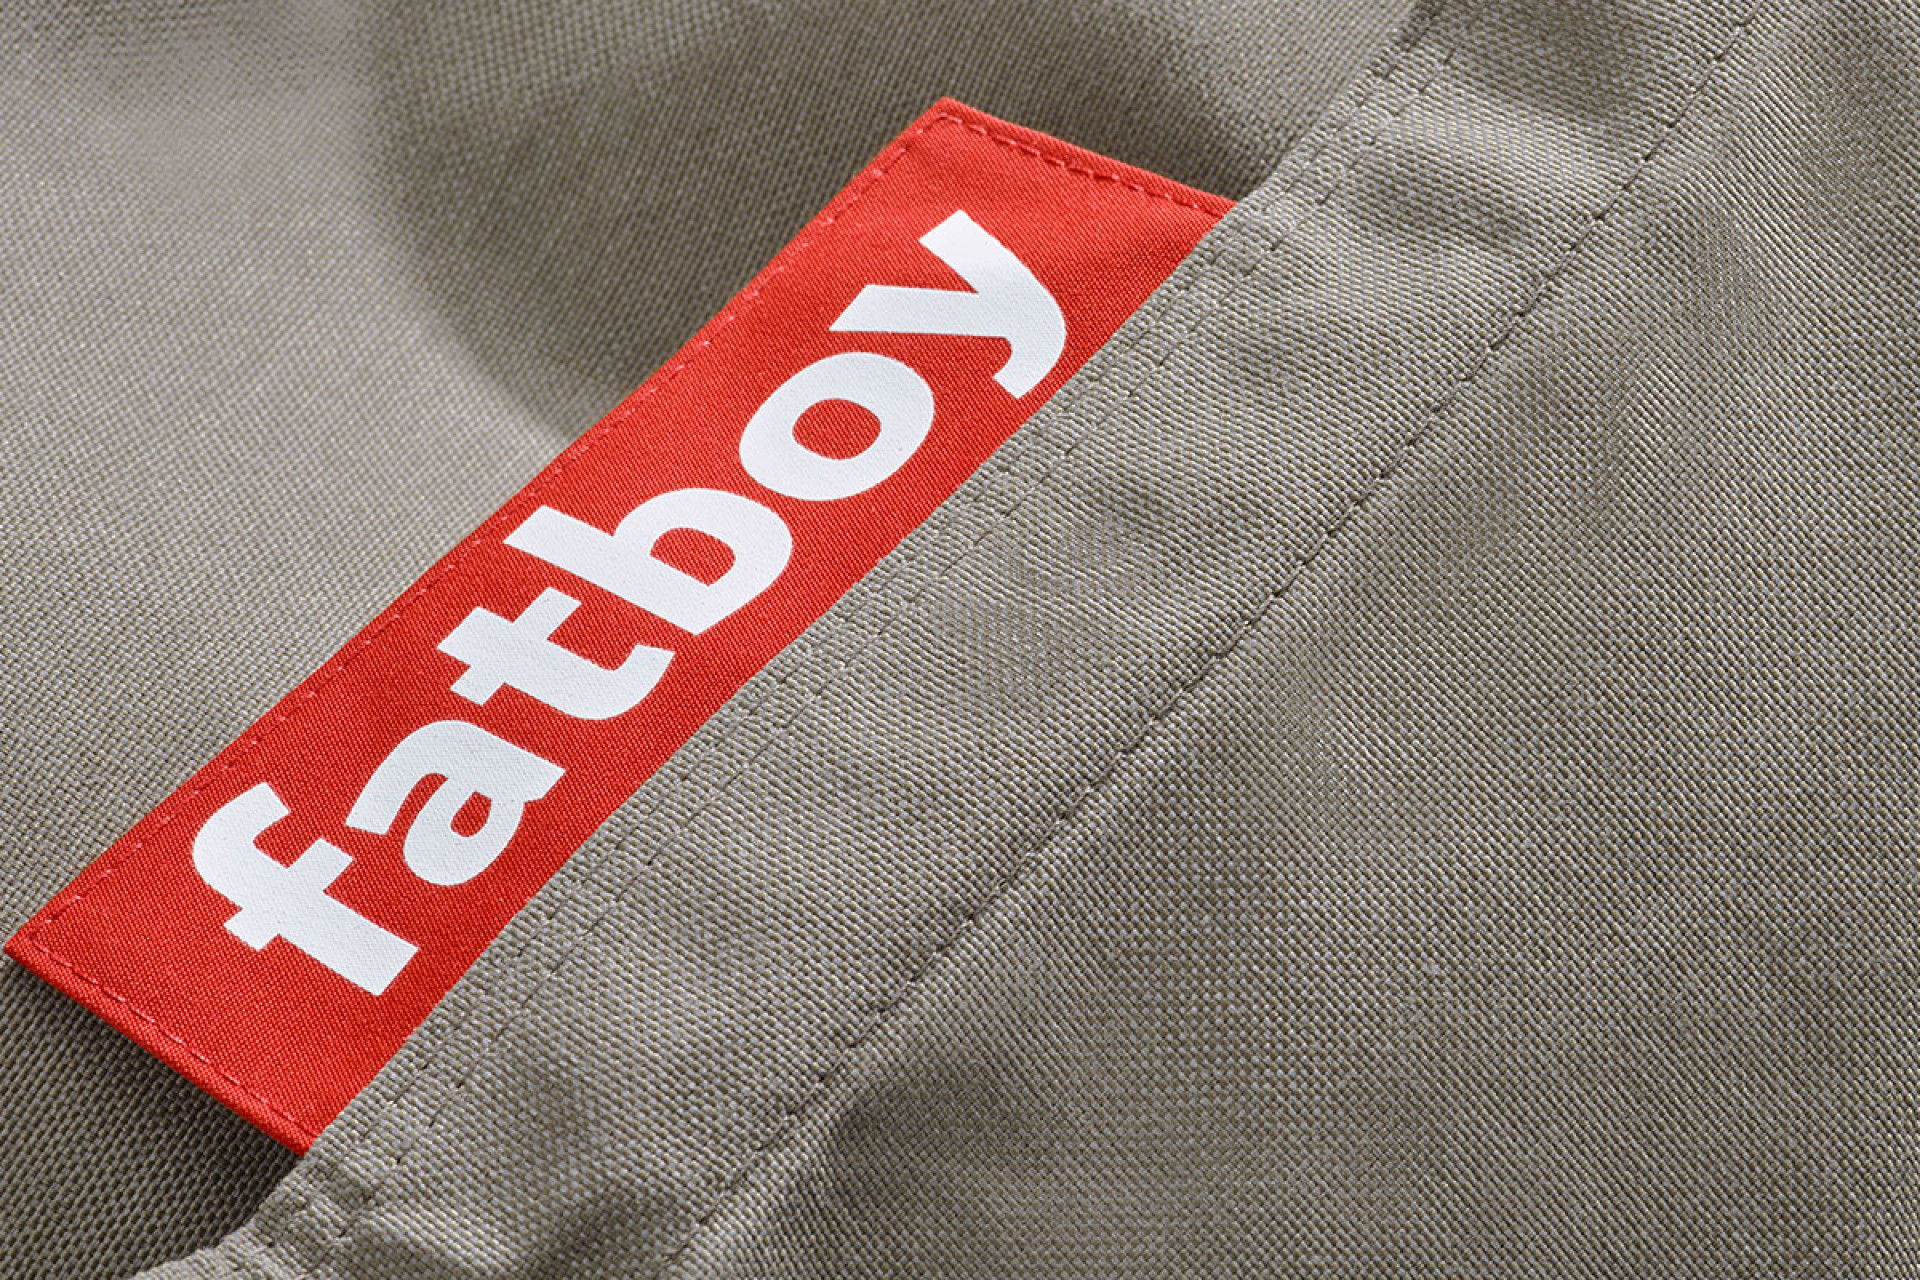 Logo textile de la marque Fatboy en blanc sur fond rouge.